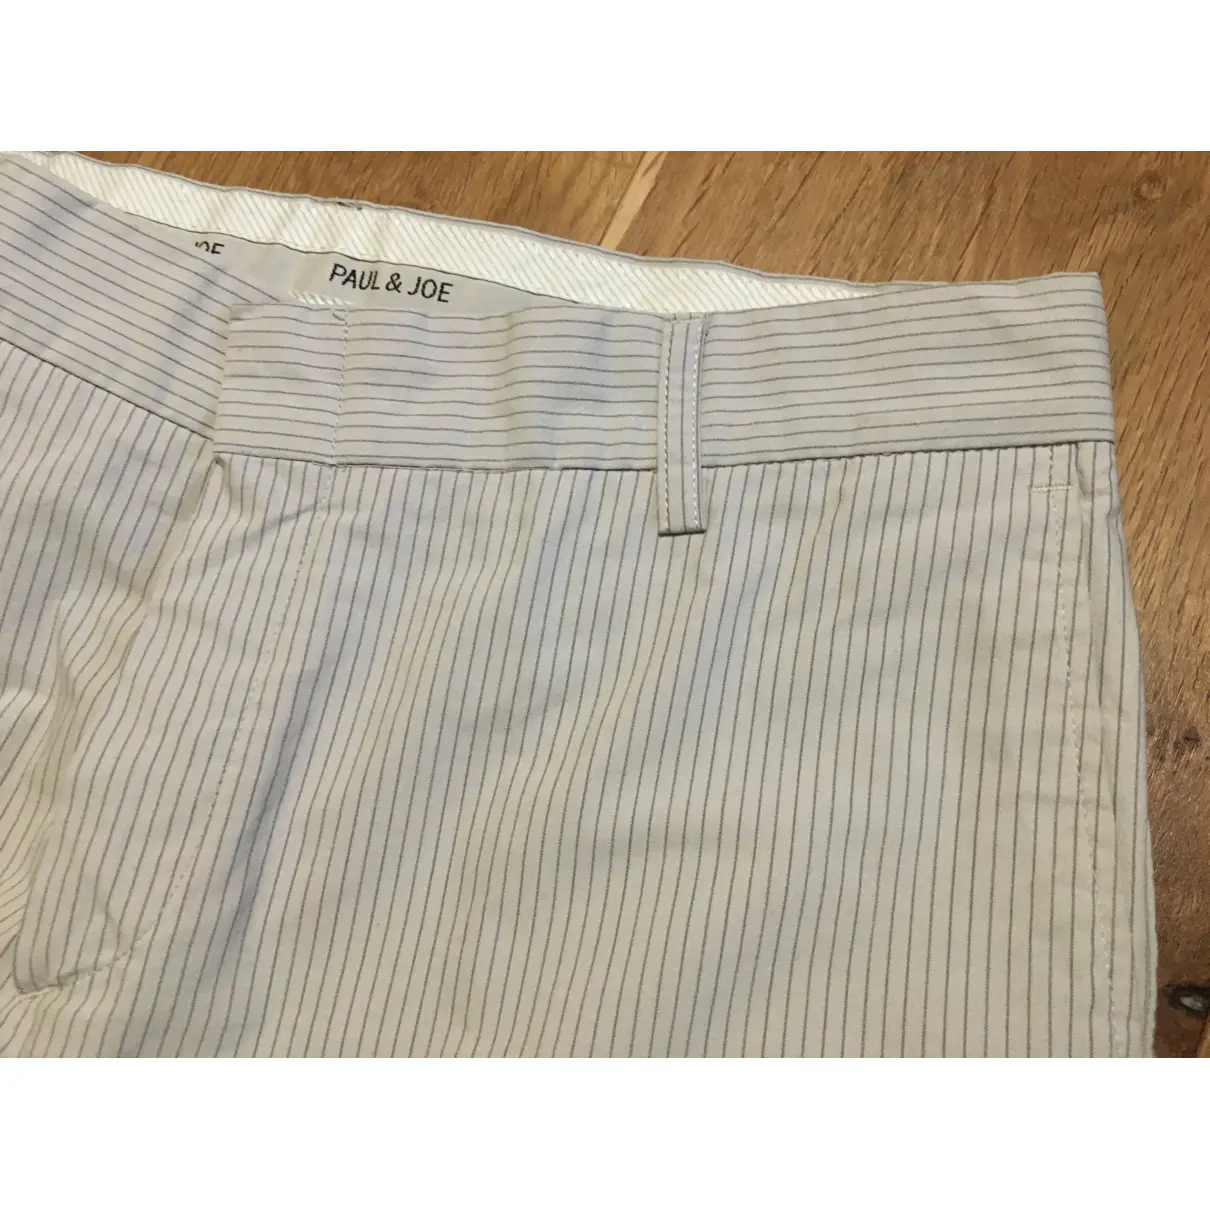 Trousers Paul & Joe - Vintage